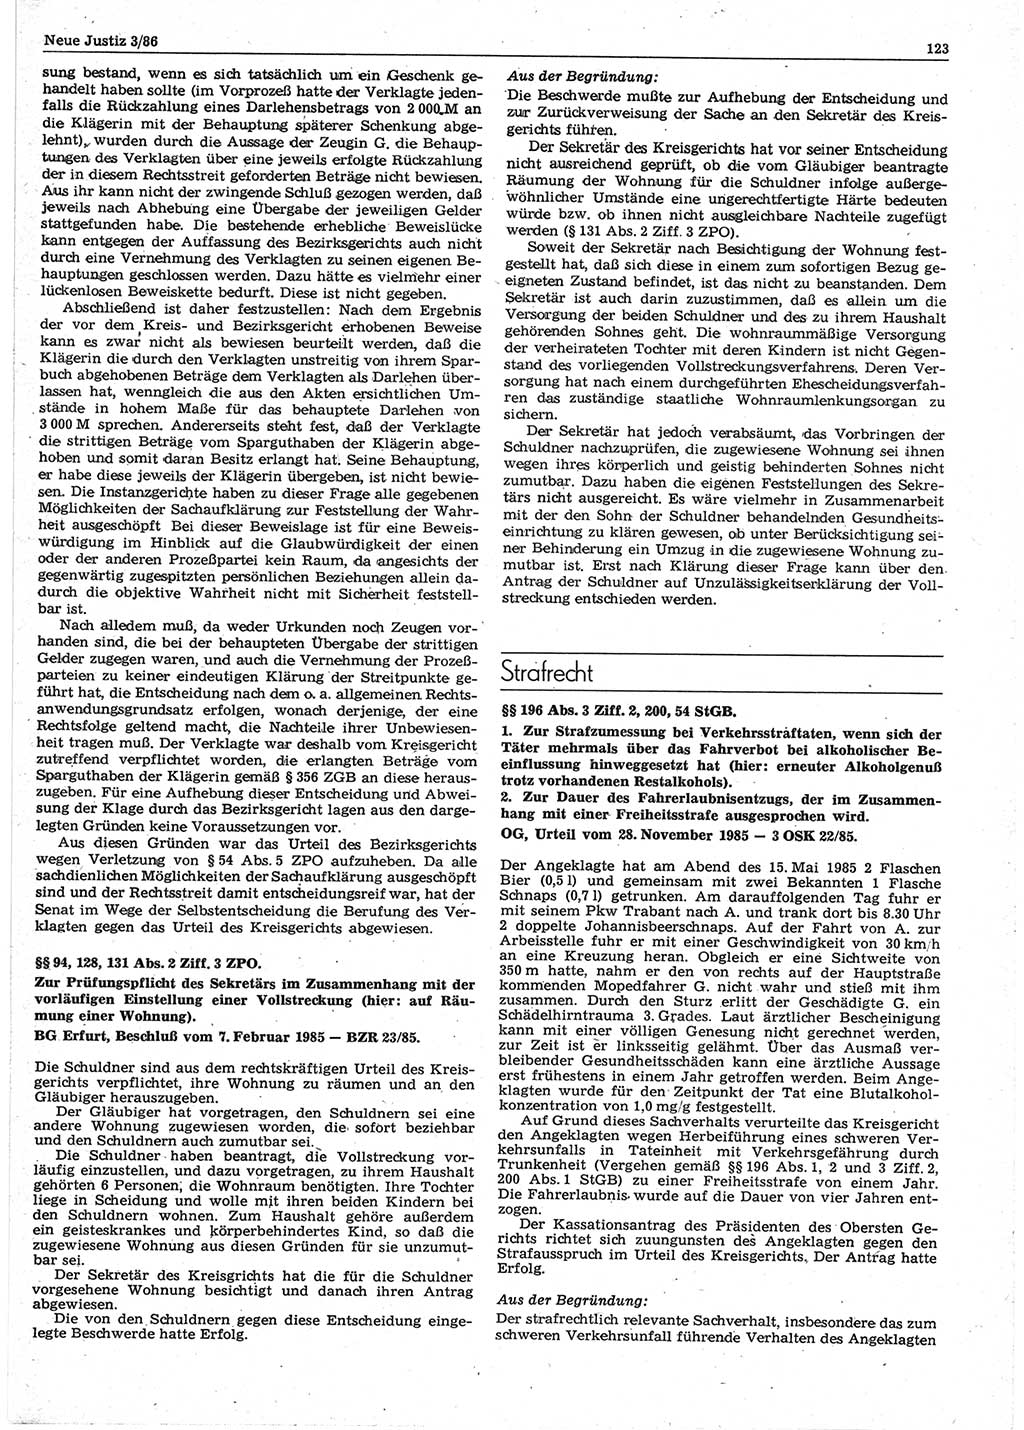 Neue Justiz (NJ), Zeitschrift für sozialistisches Recht und Gesetzlichkeit [Deutsche Demokratische Republik (DDR)], 40. Jahrgang 1986, Seite 123 (NJ DDR 1986, S. 123)